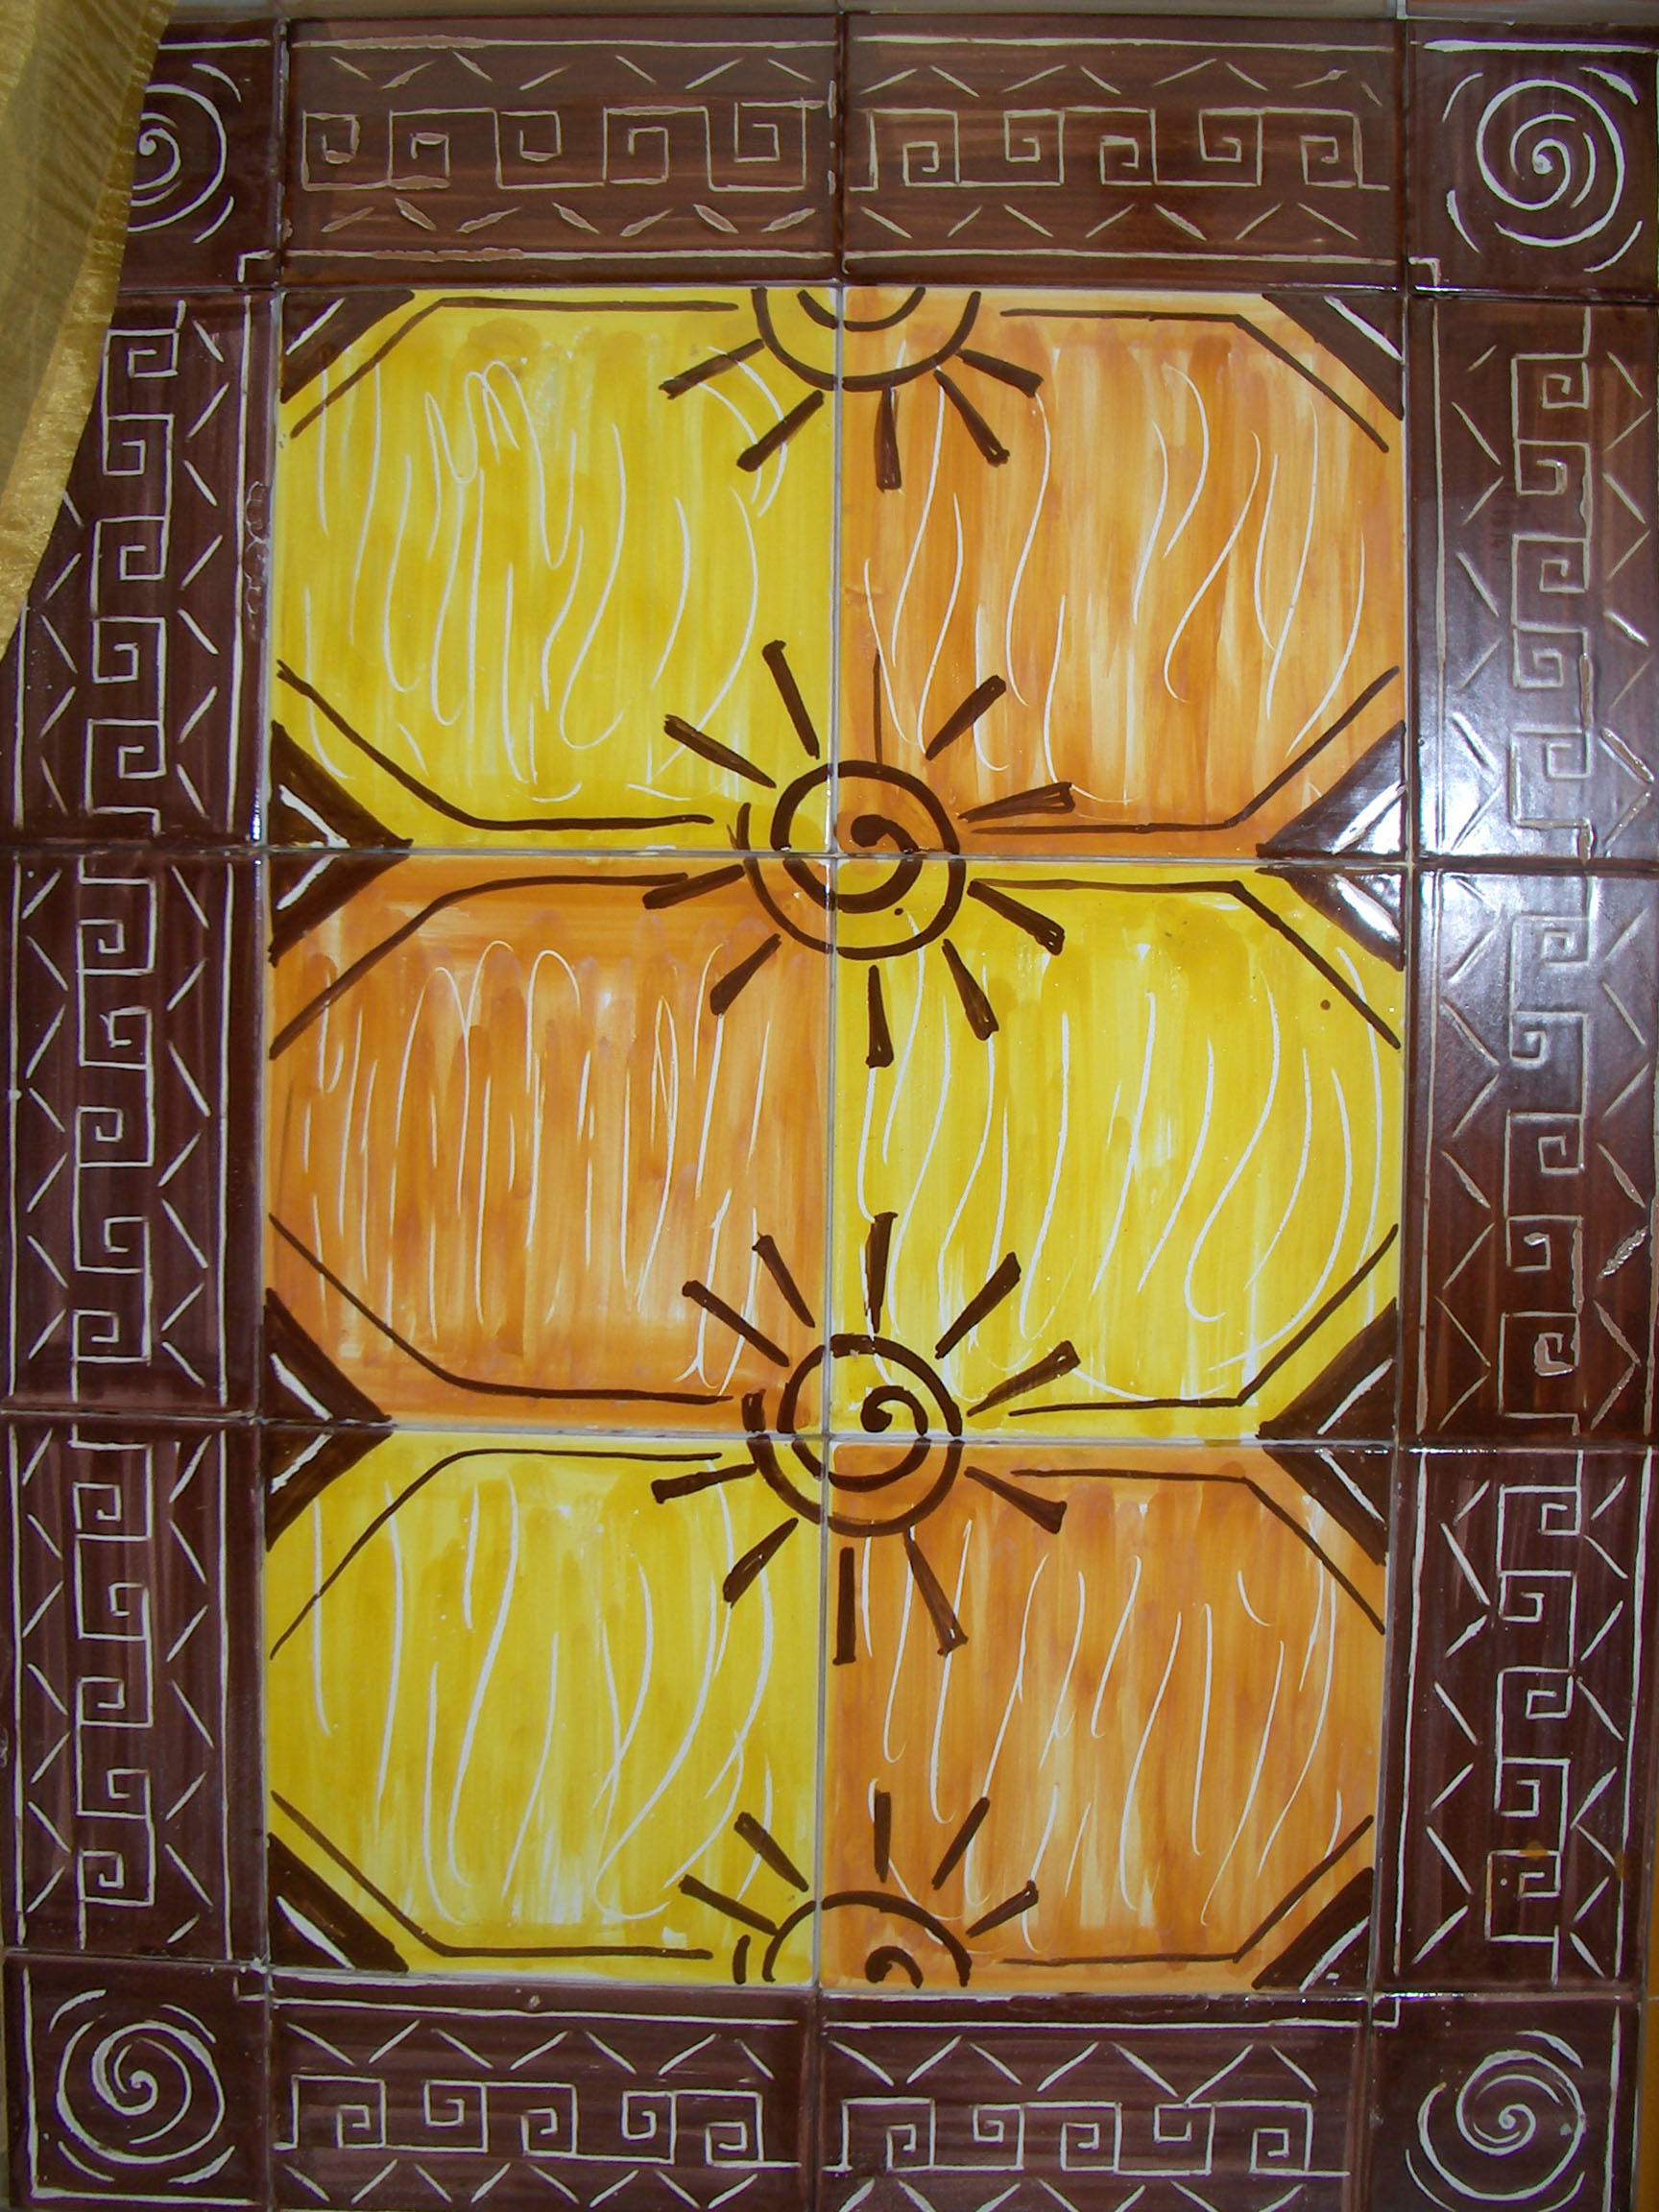 Pannello decorativo. Colori giallo, arancio e marrone